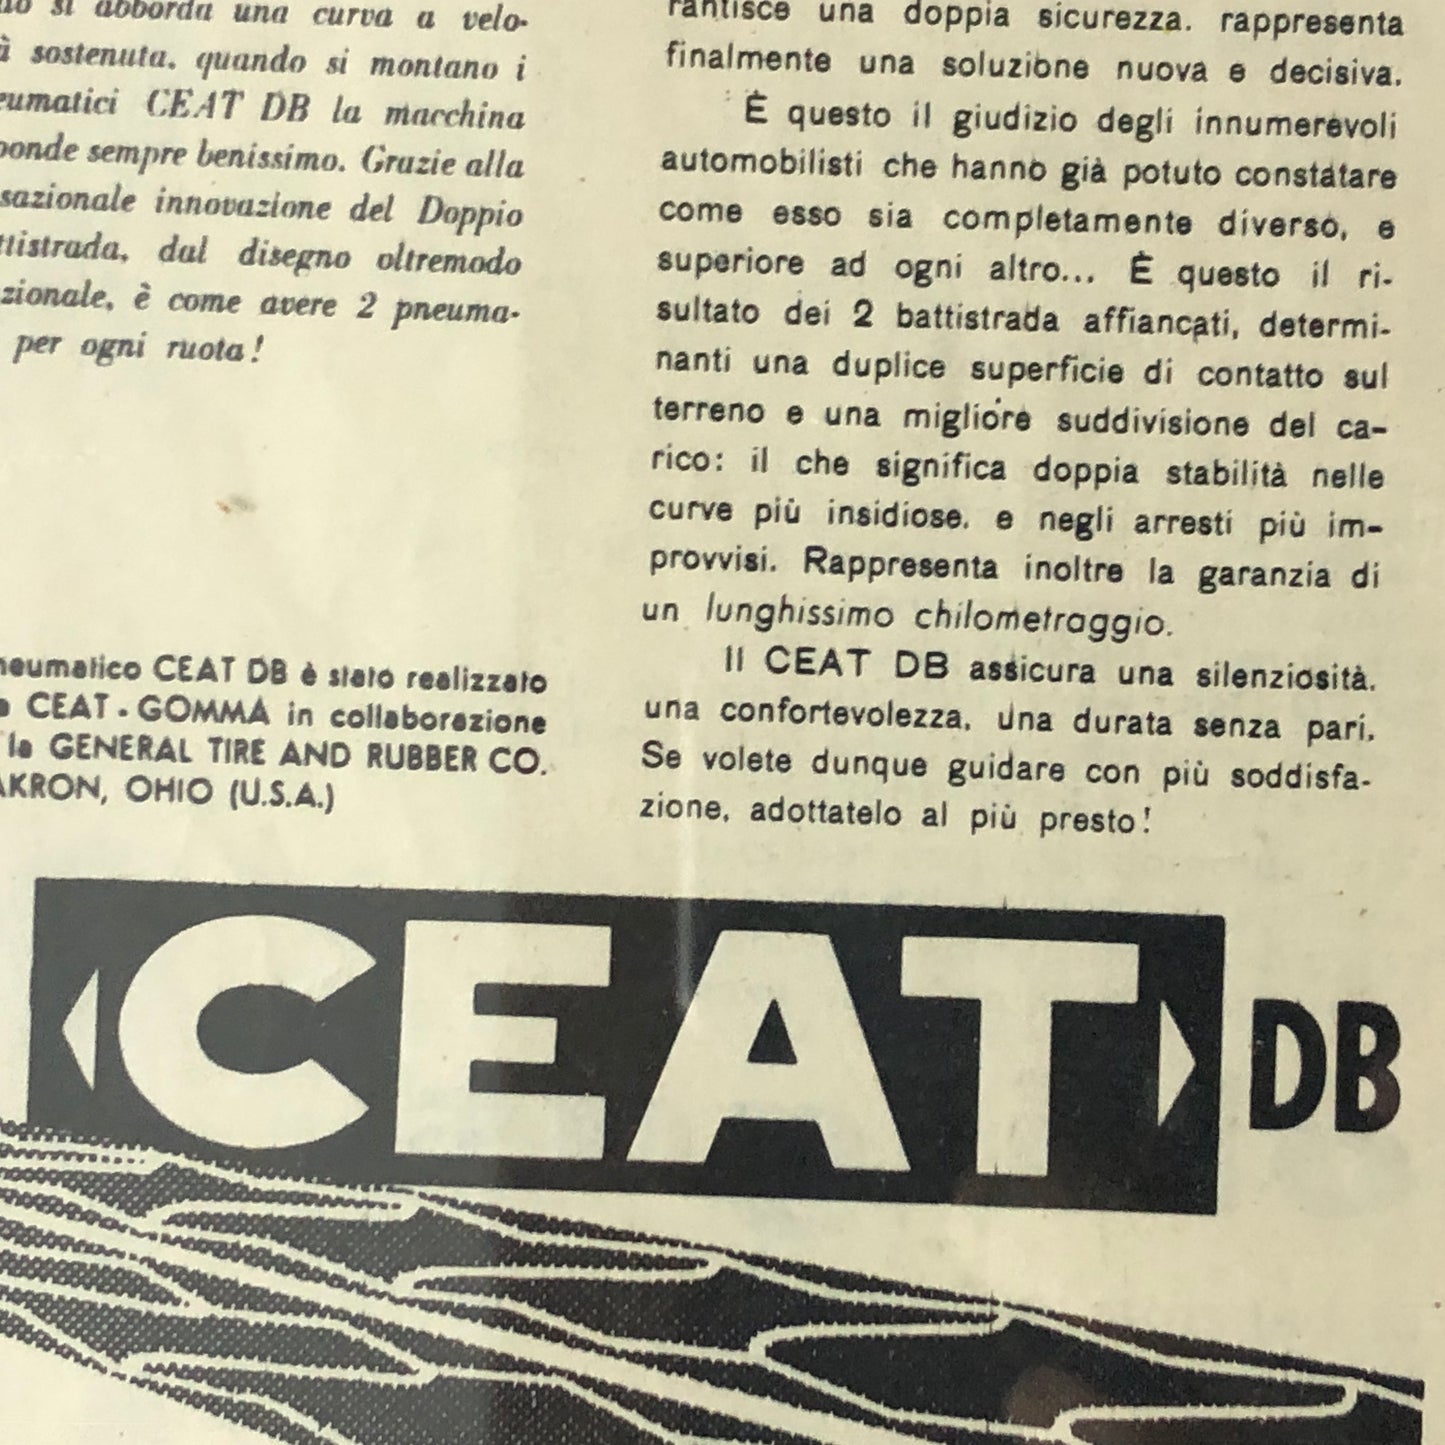 CEAT, Pubblicità Anno 1959 CEAT Pneumatici DB con Didascalia in Italiano